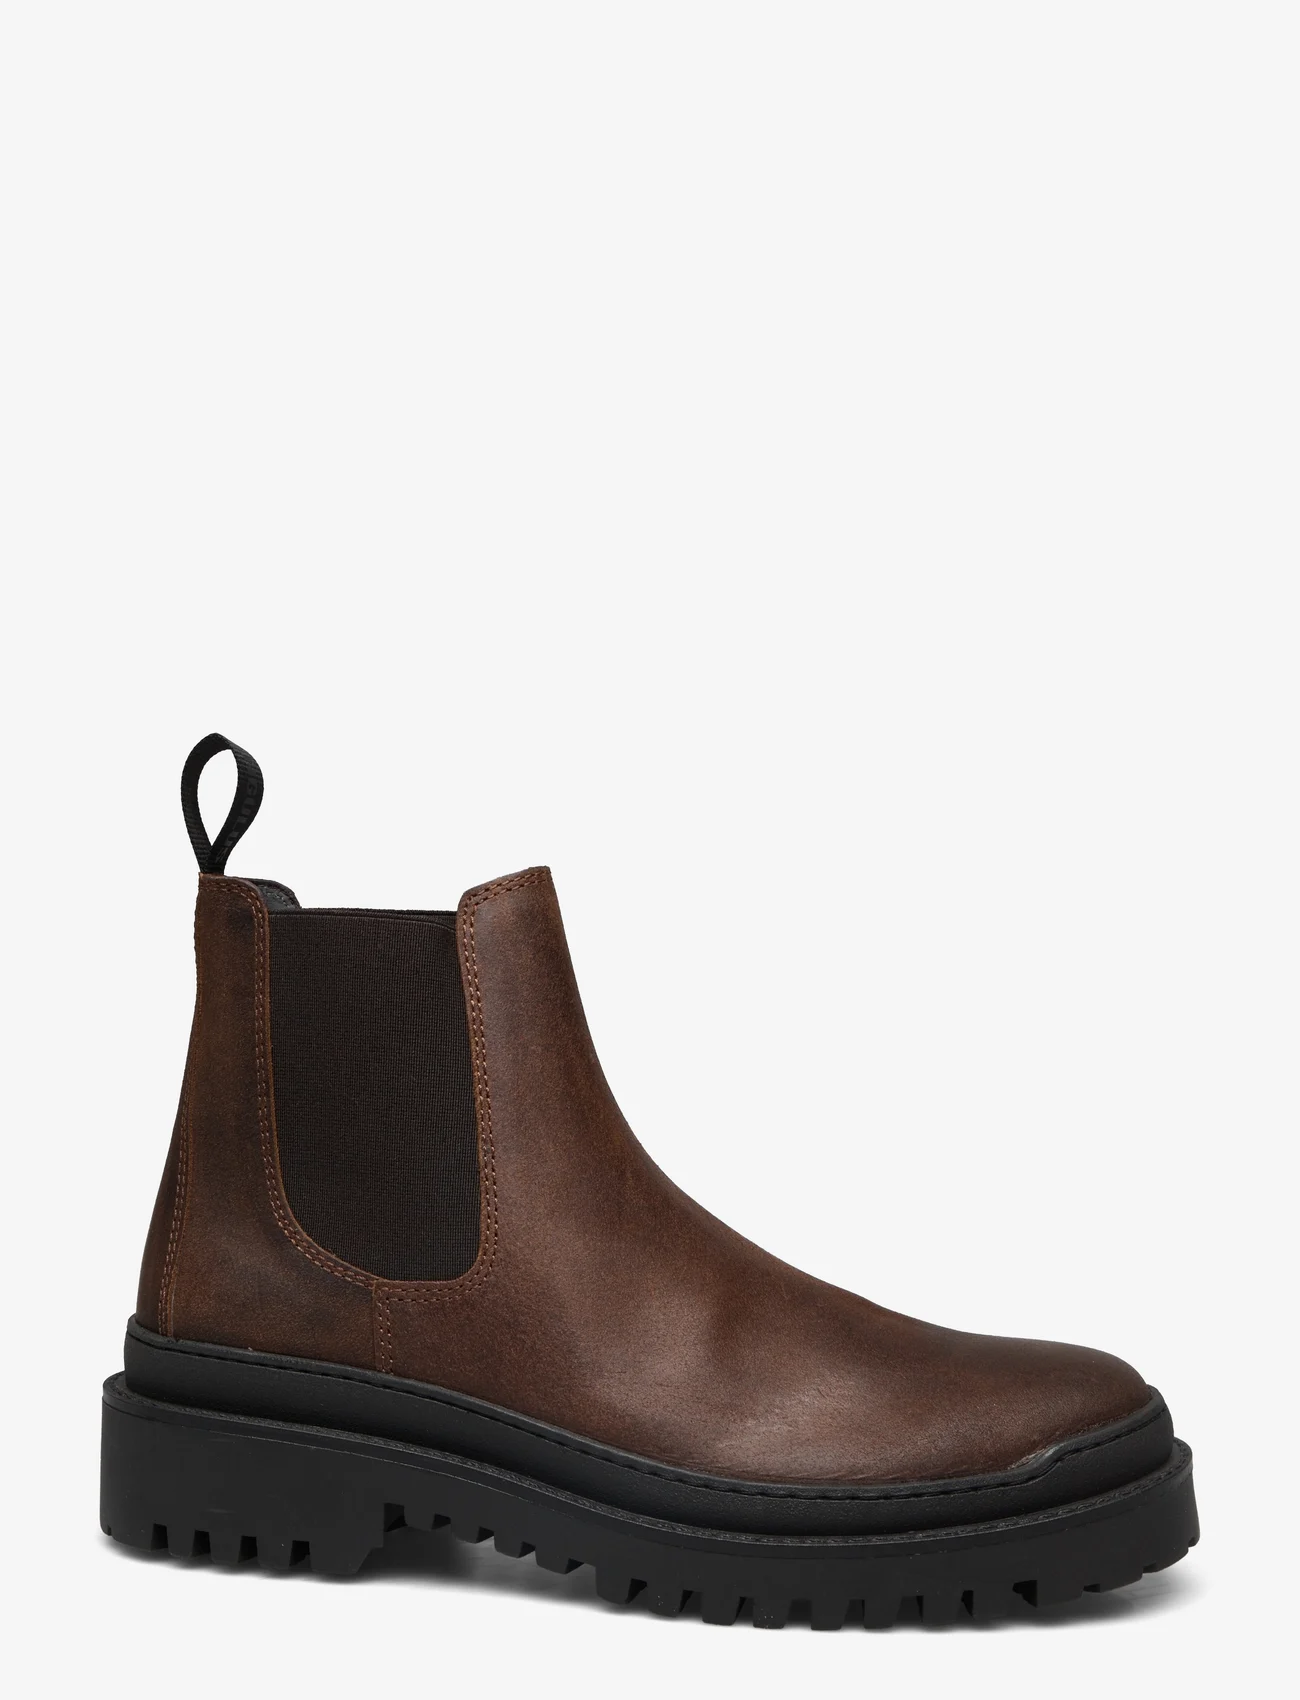 ANGULUS - Boots - flat - geburtstagsgeschenke - 2108/002 brown/brown - 1